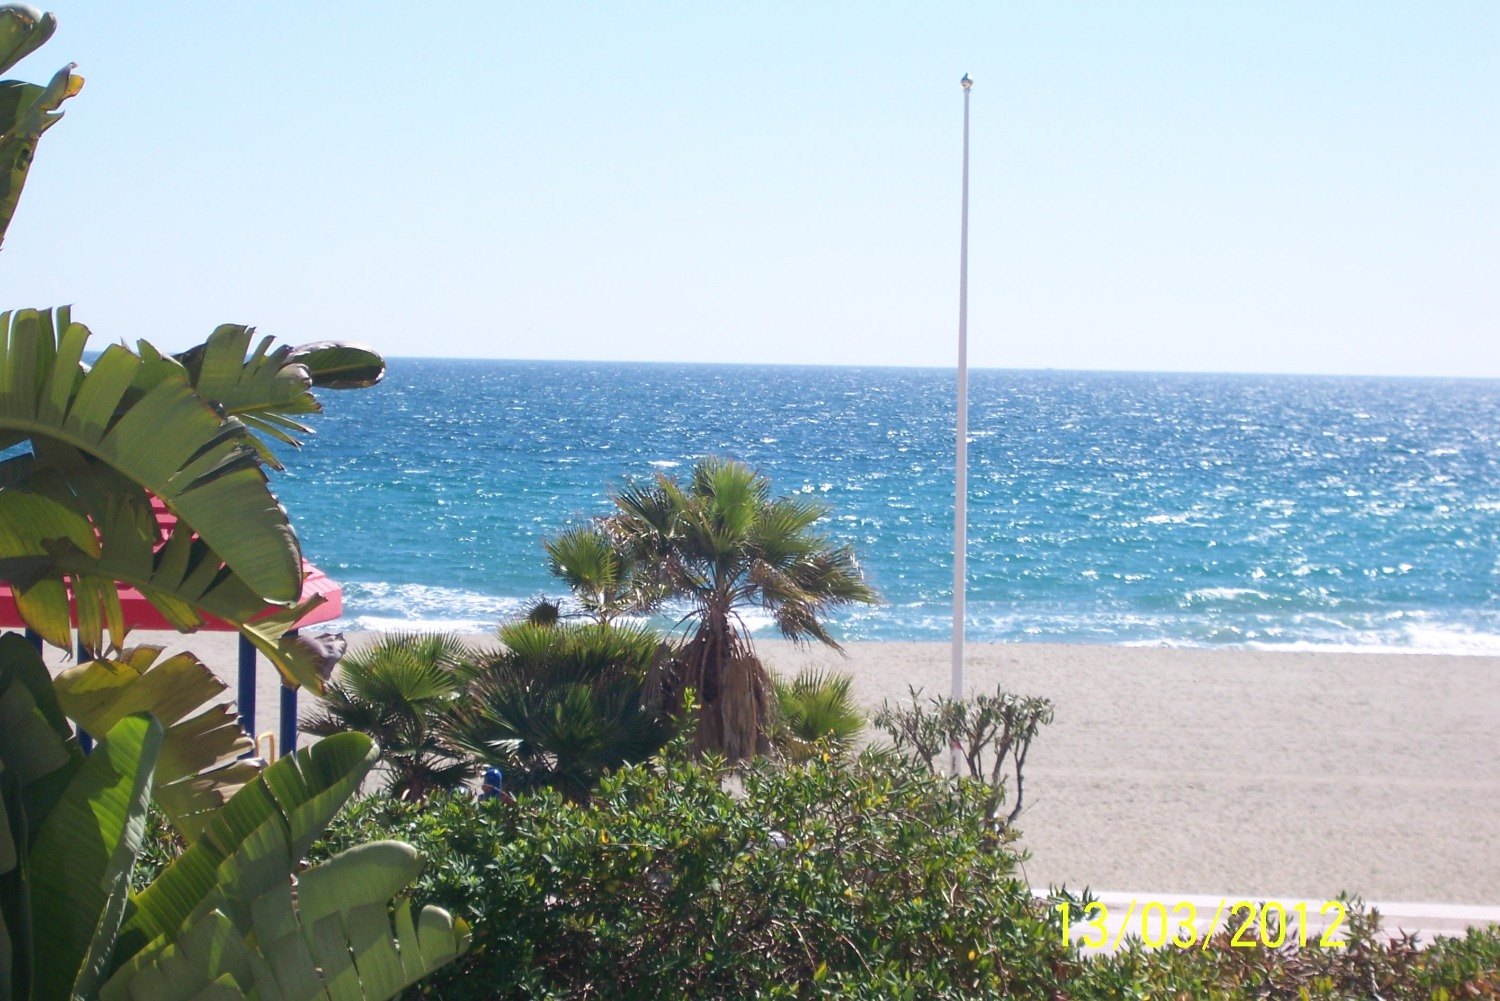 Casa vacanze. Appartamento con vista sul mare. Puerto Banus, Marbella.